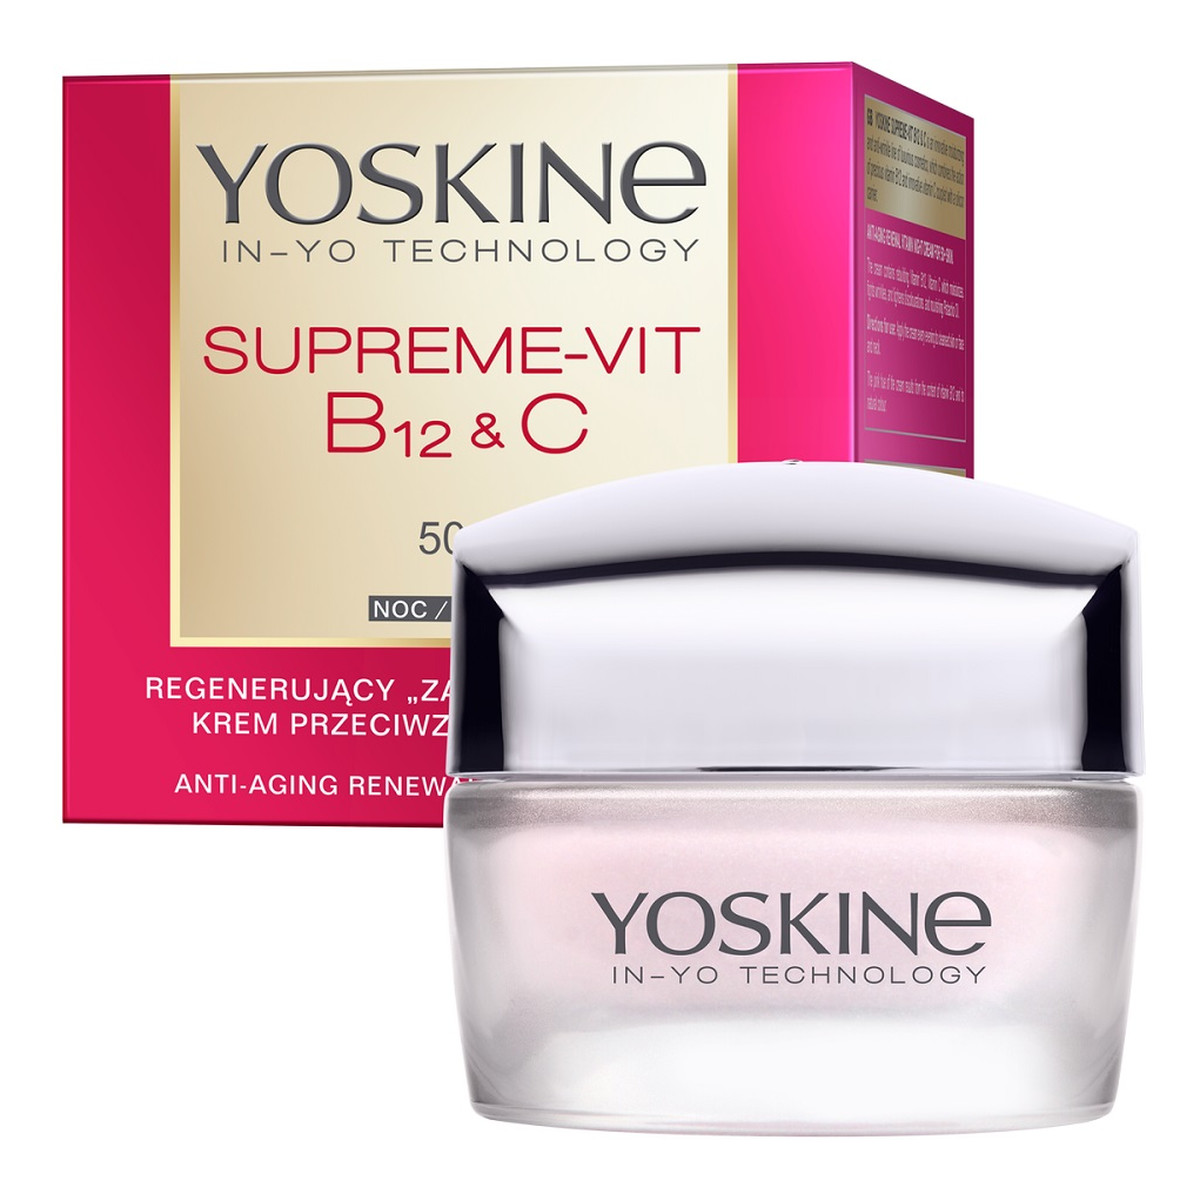 Yoskine Supreme-Vit B12 + C regenerujący Krem przeciwzmarszczkowy do twarzy na noc 50+ 50ml